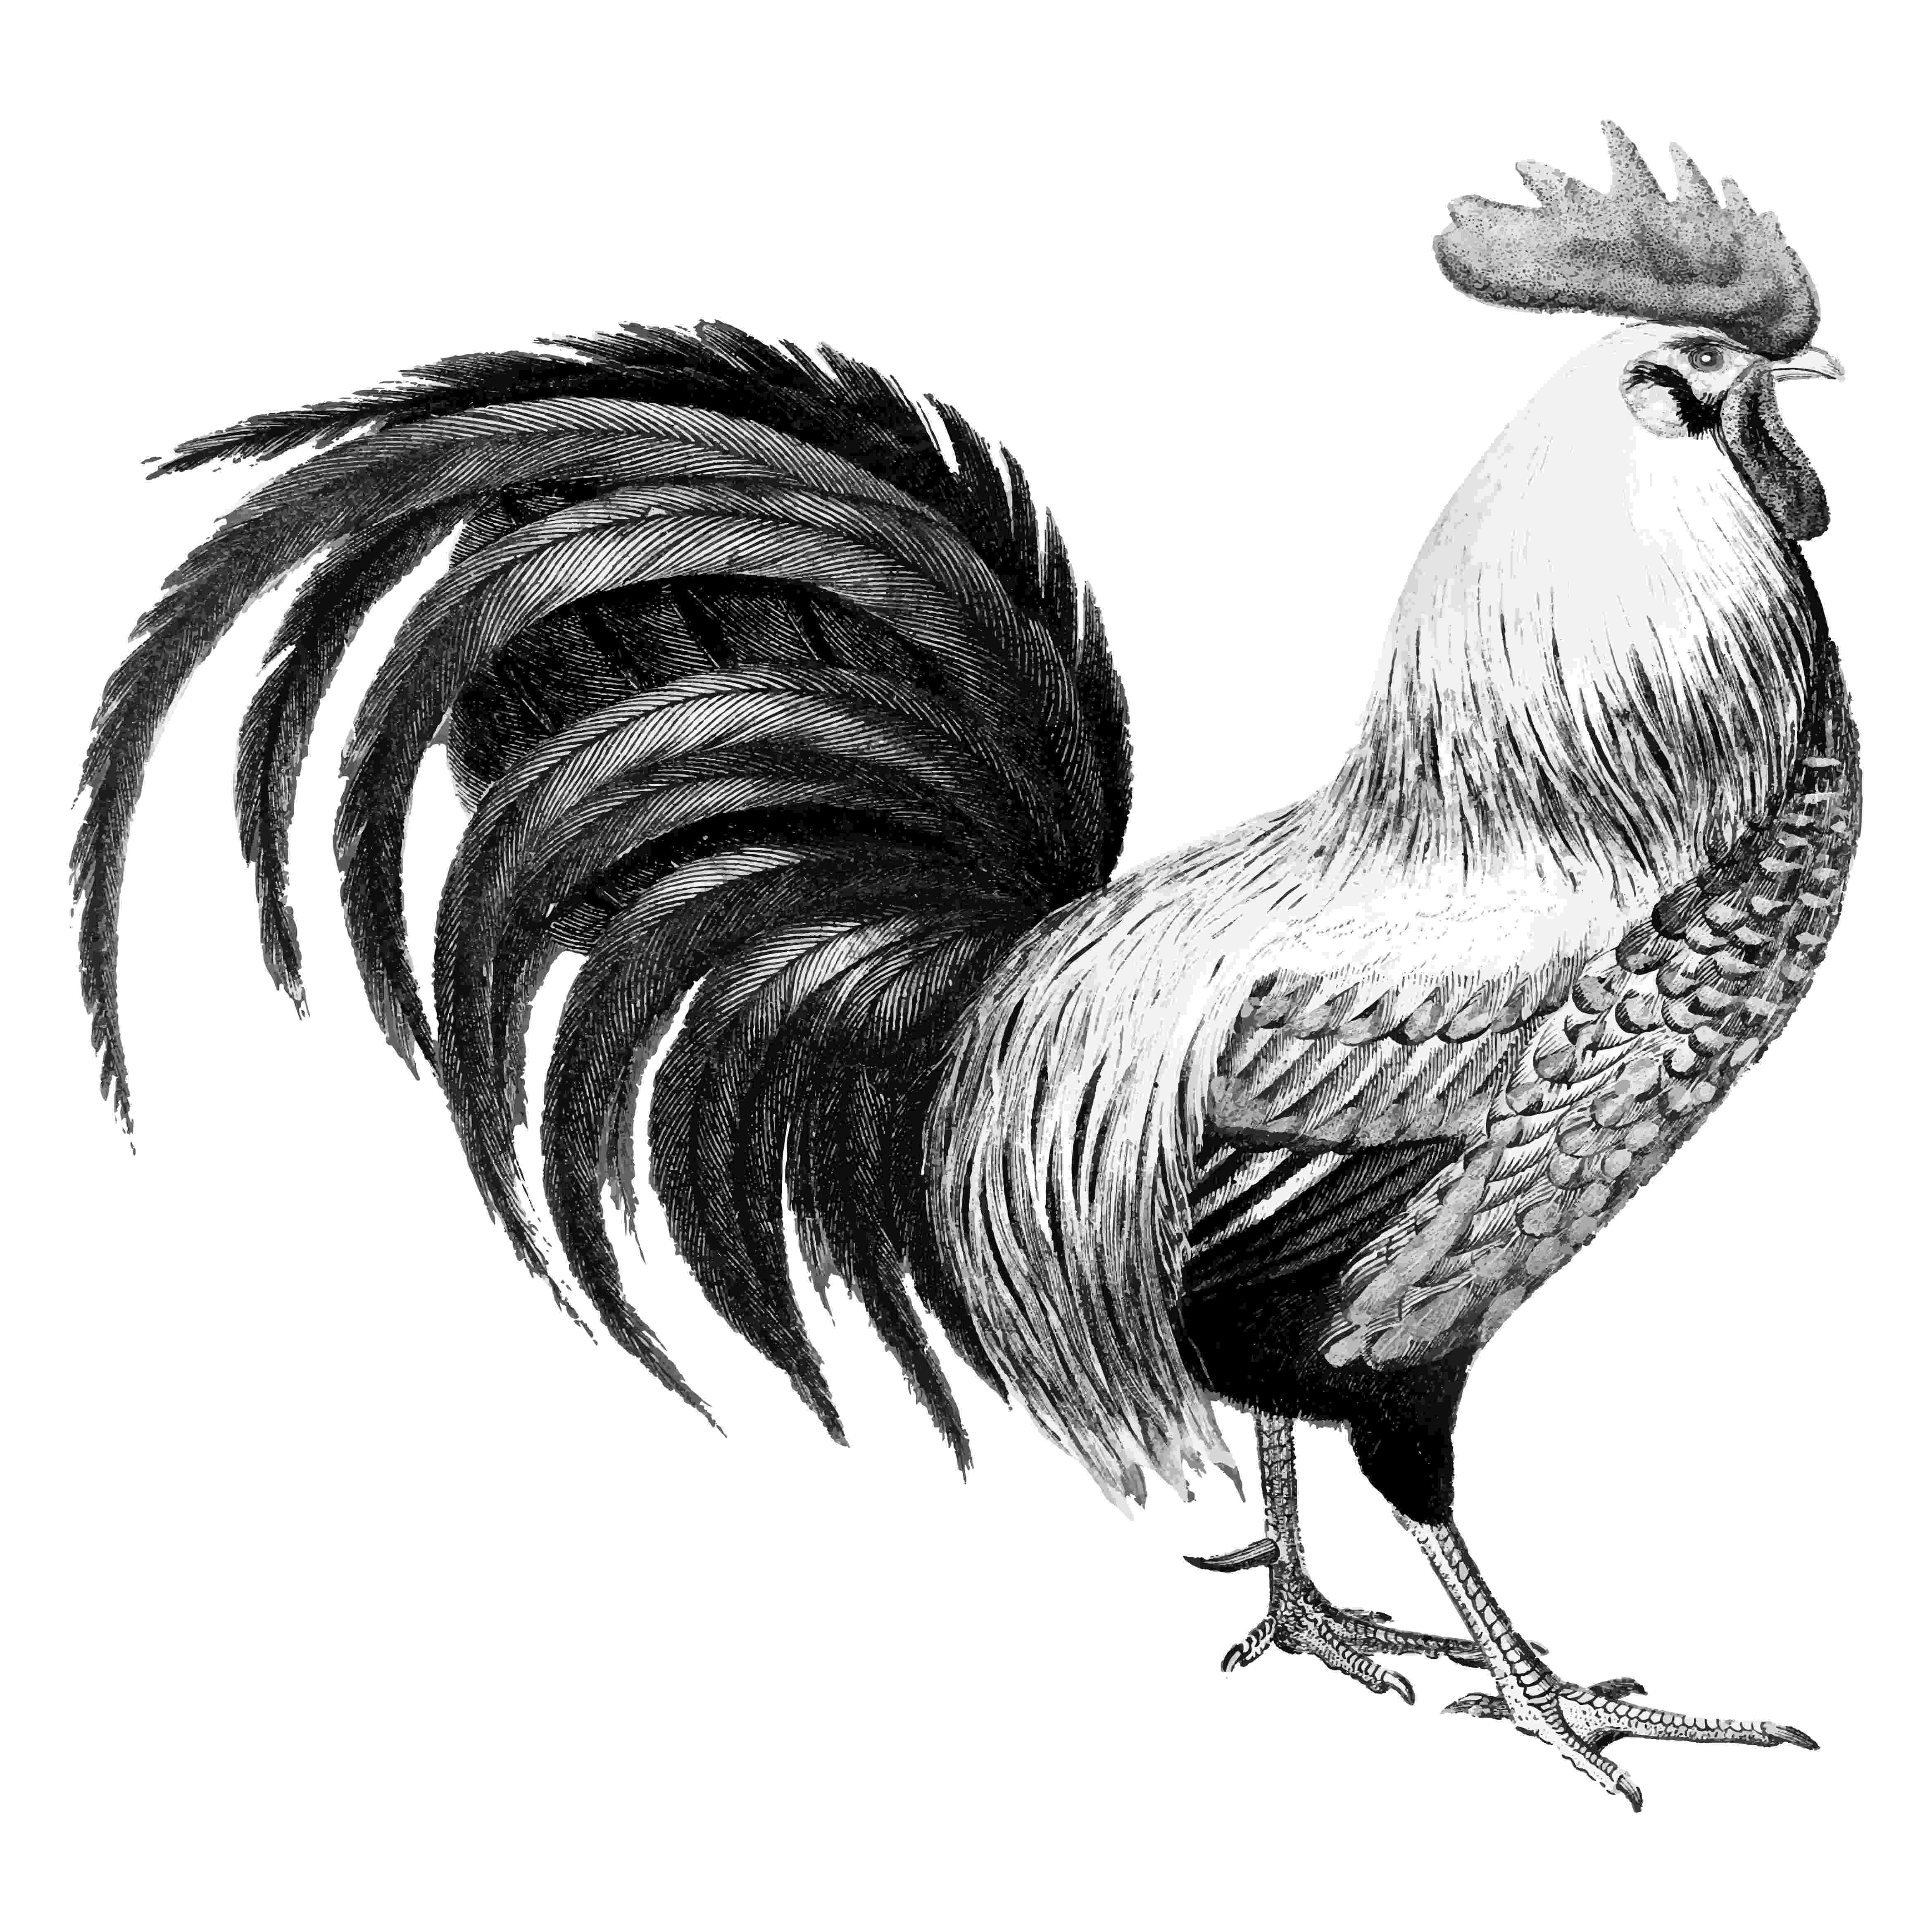 rooster sketch linda förstner artwork sketch rooster 